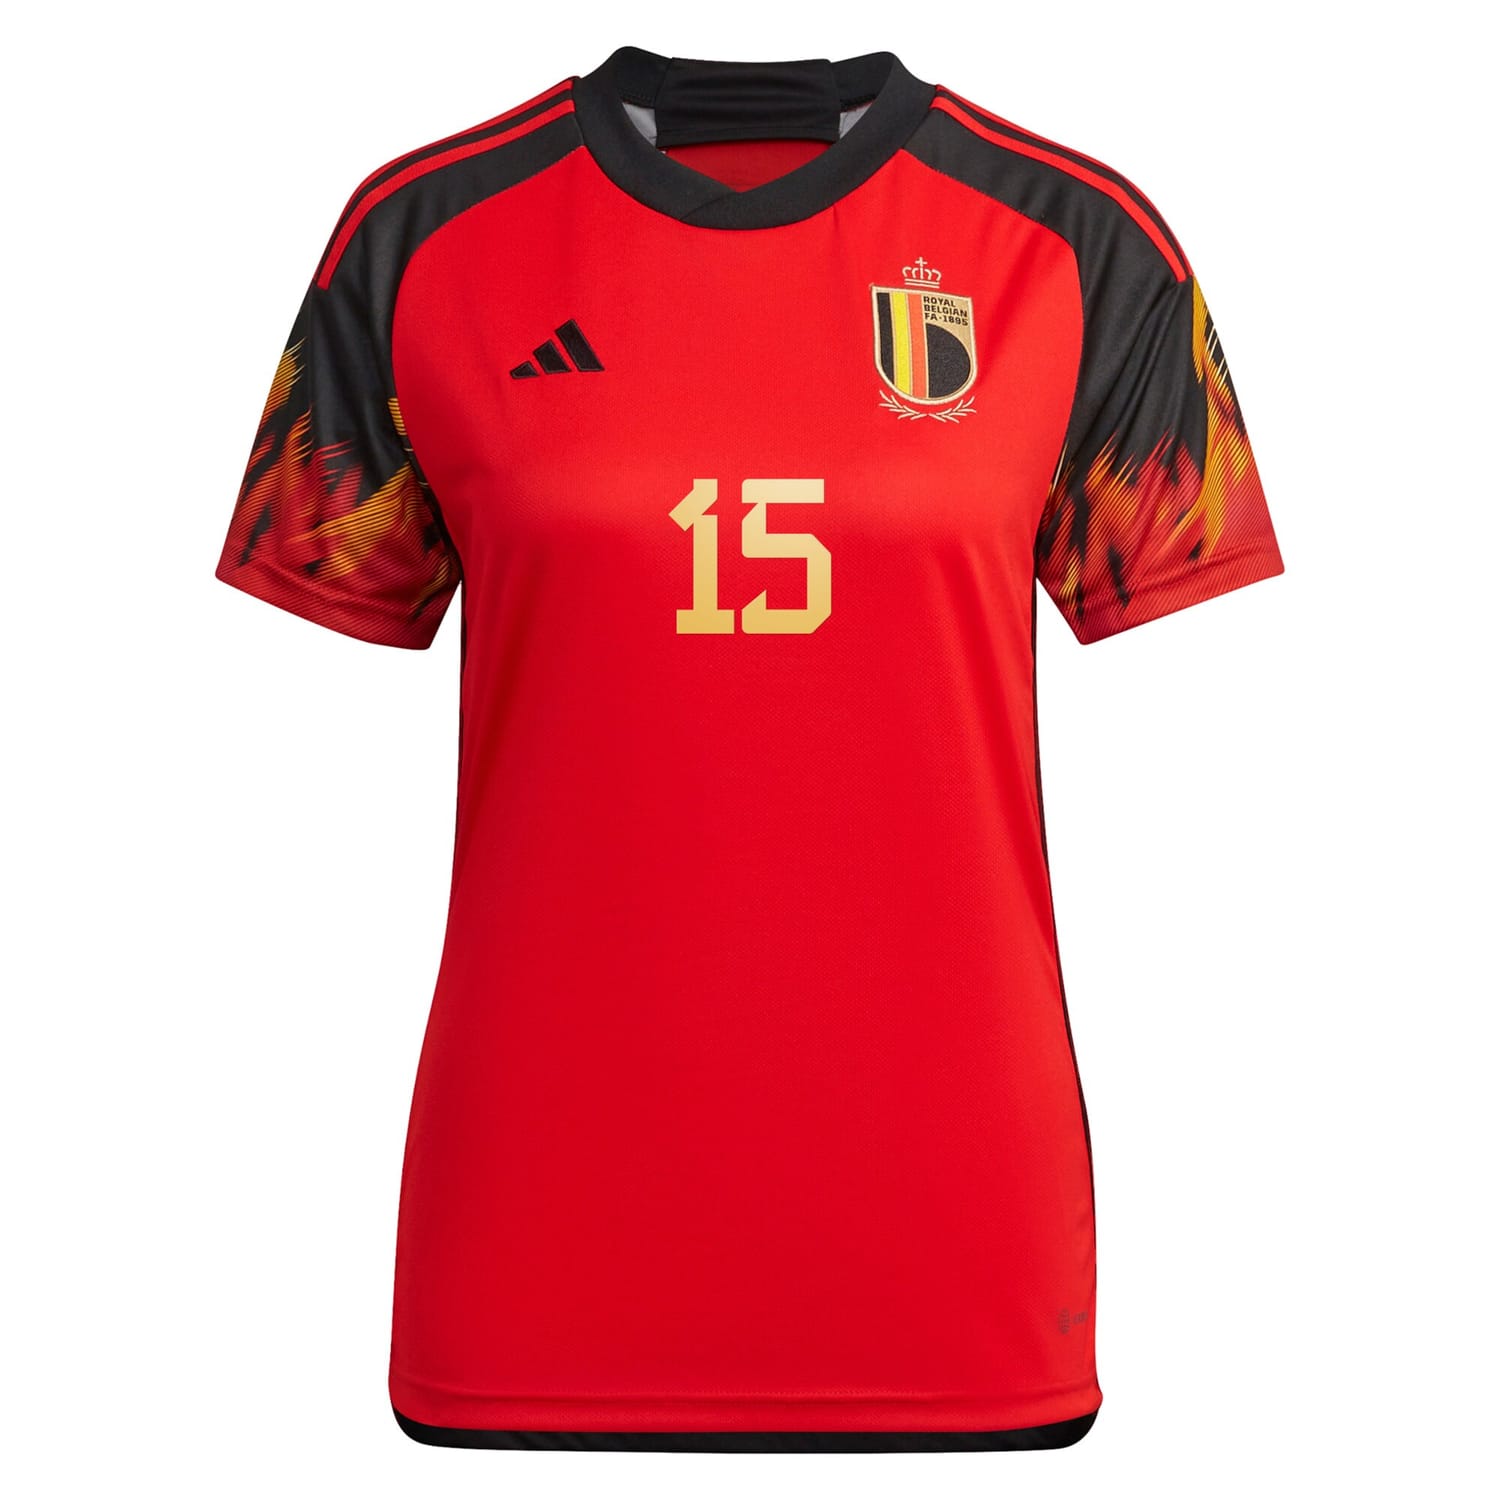 Belgium National Team Home Jersey Shirt 2022 player Jody Vangheluwe 15 printing for Women